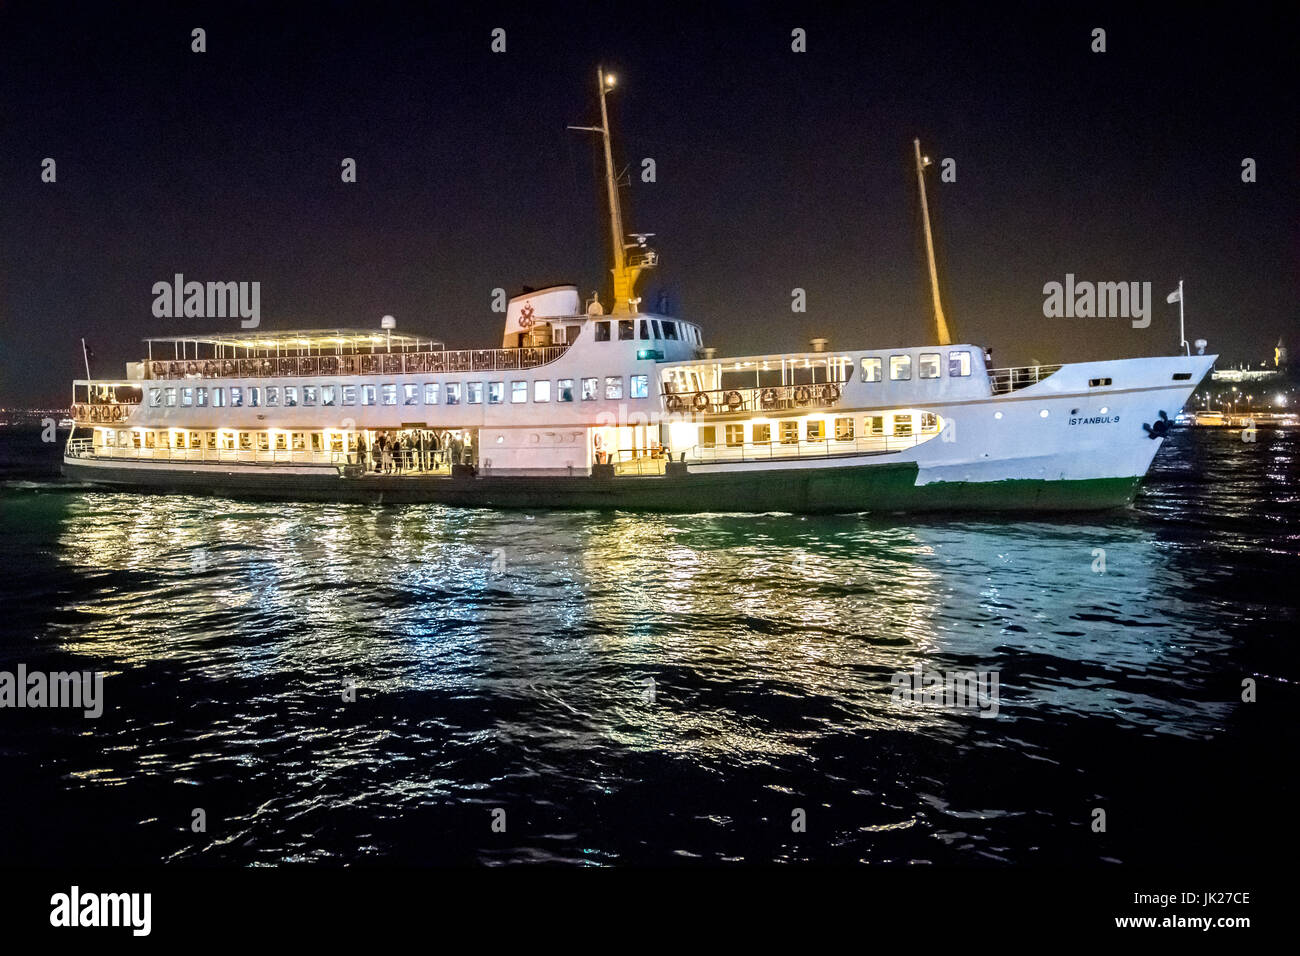 Una nave passando attraverso lo stretto del Bosforo, una via navigabile internazionale che separa l'Europa e Asia. Foto Stock